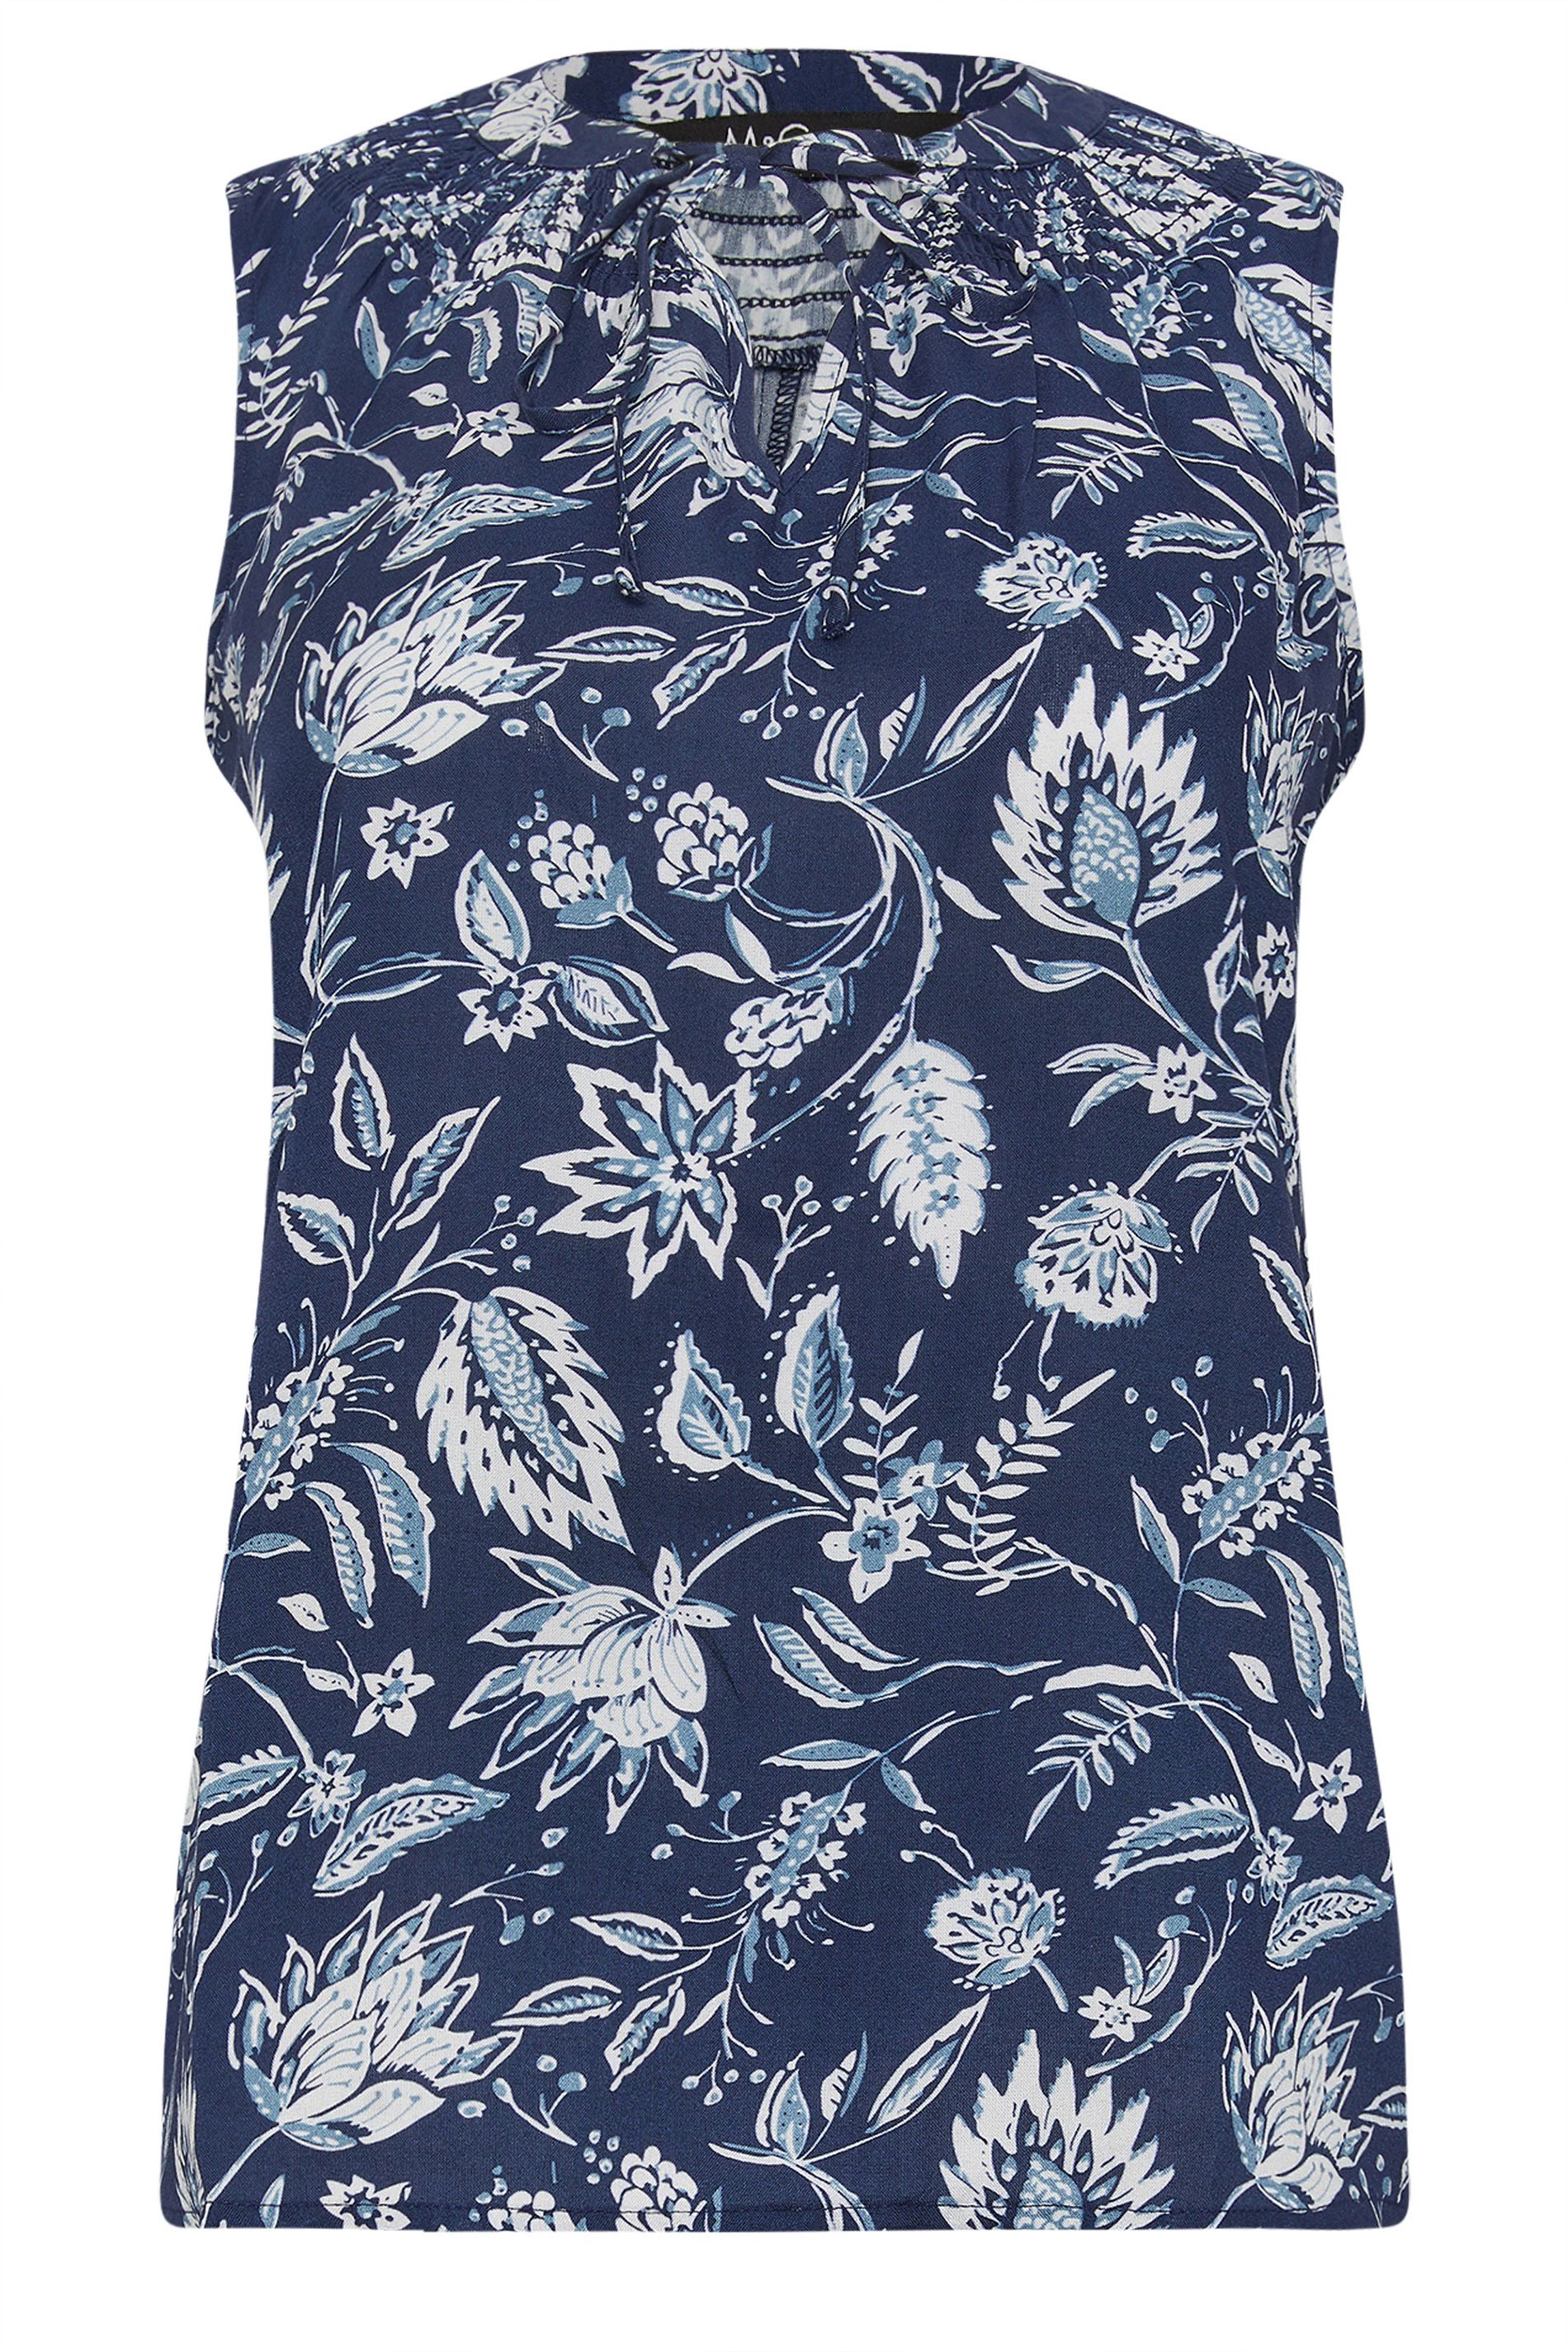 M&Co Petite Women's Blue Floral Print Shell Top | M&Co 1